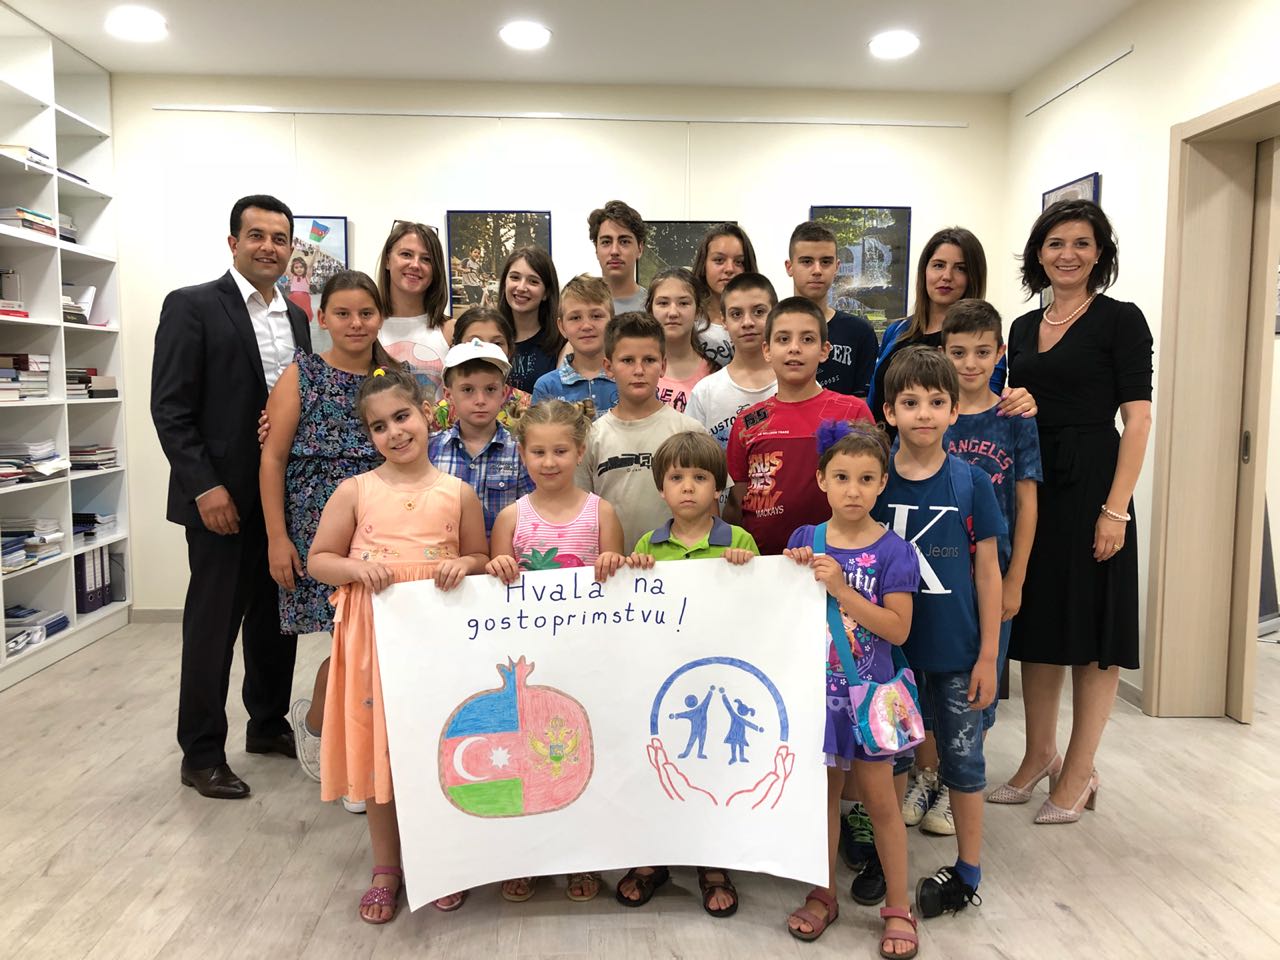 Monteneqro uşaq hüquqlarının müdafiəsi mərkəzinin ziyarəti - 2018 